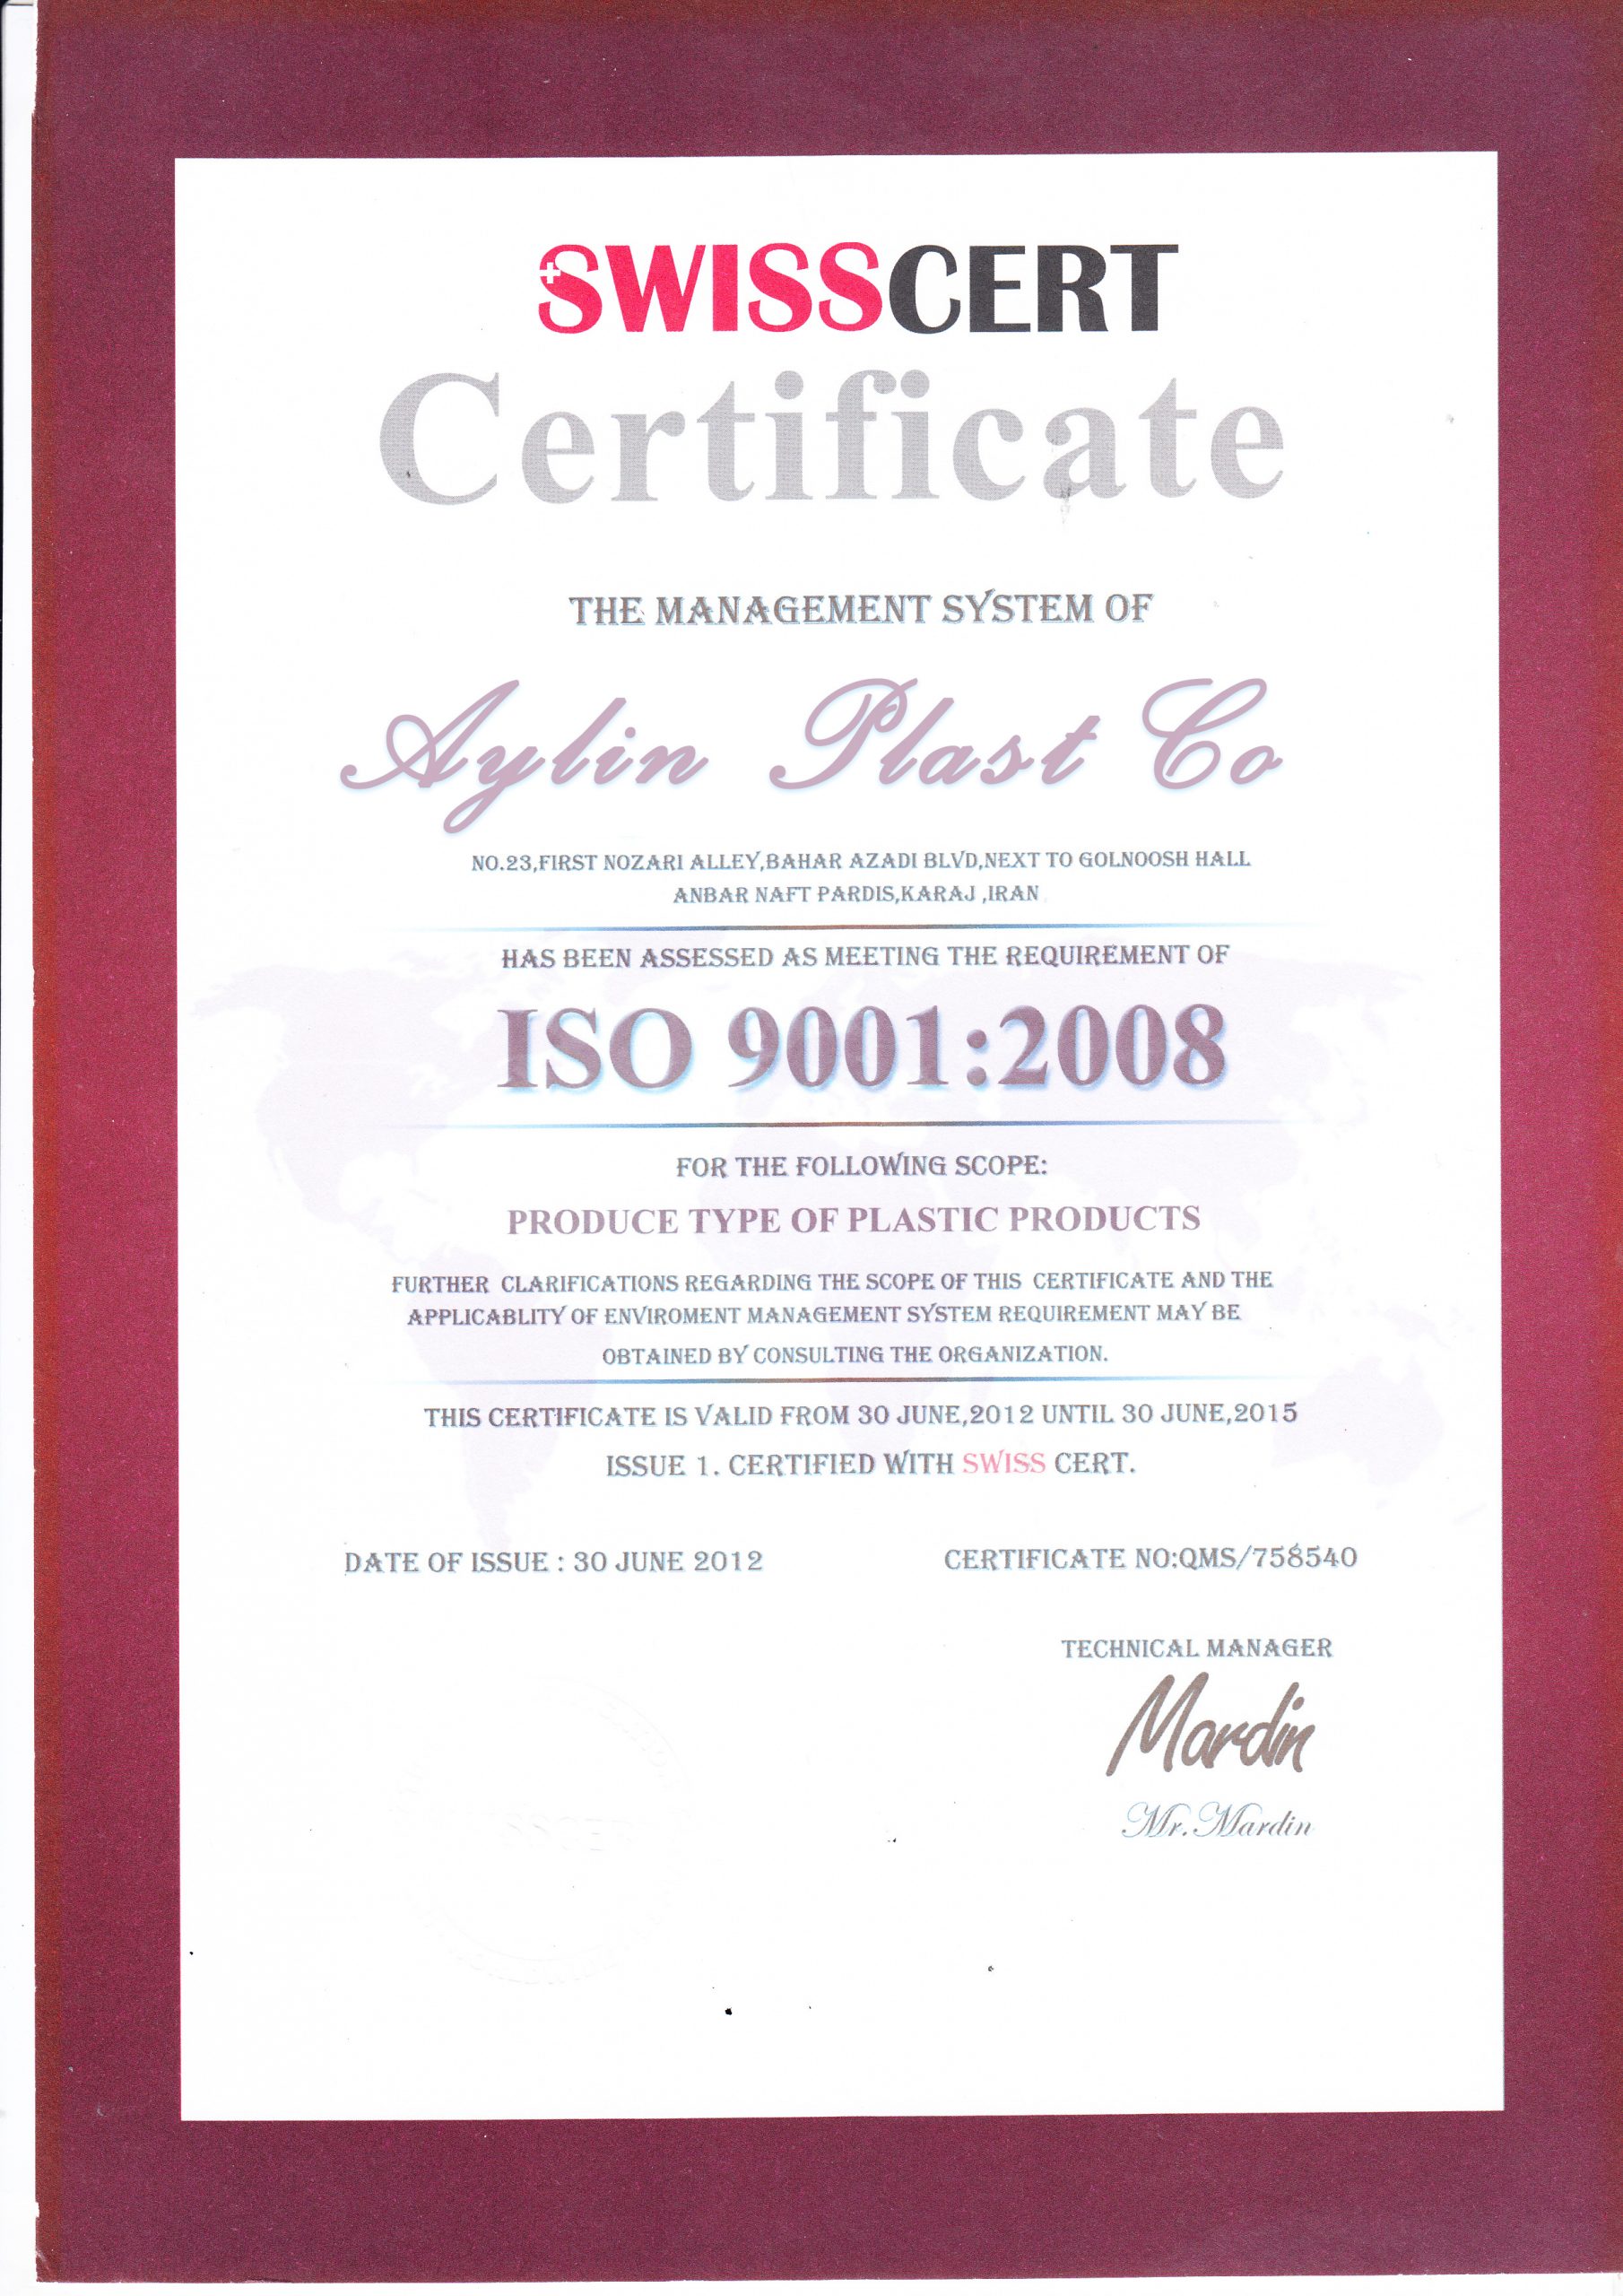 گواهینامه ISO9001 آیلین پلاست